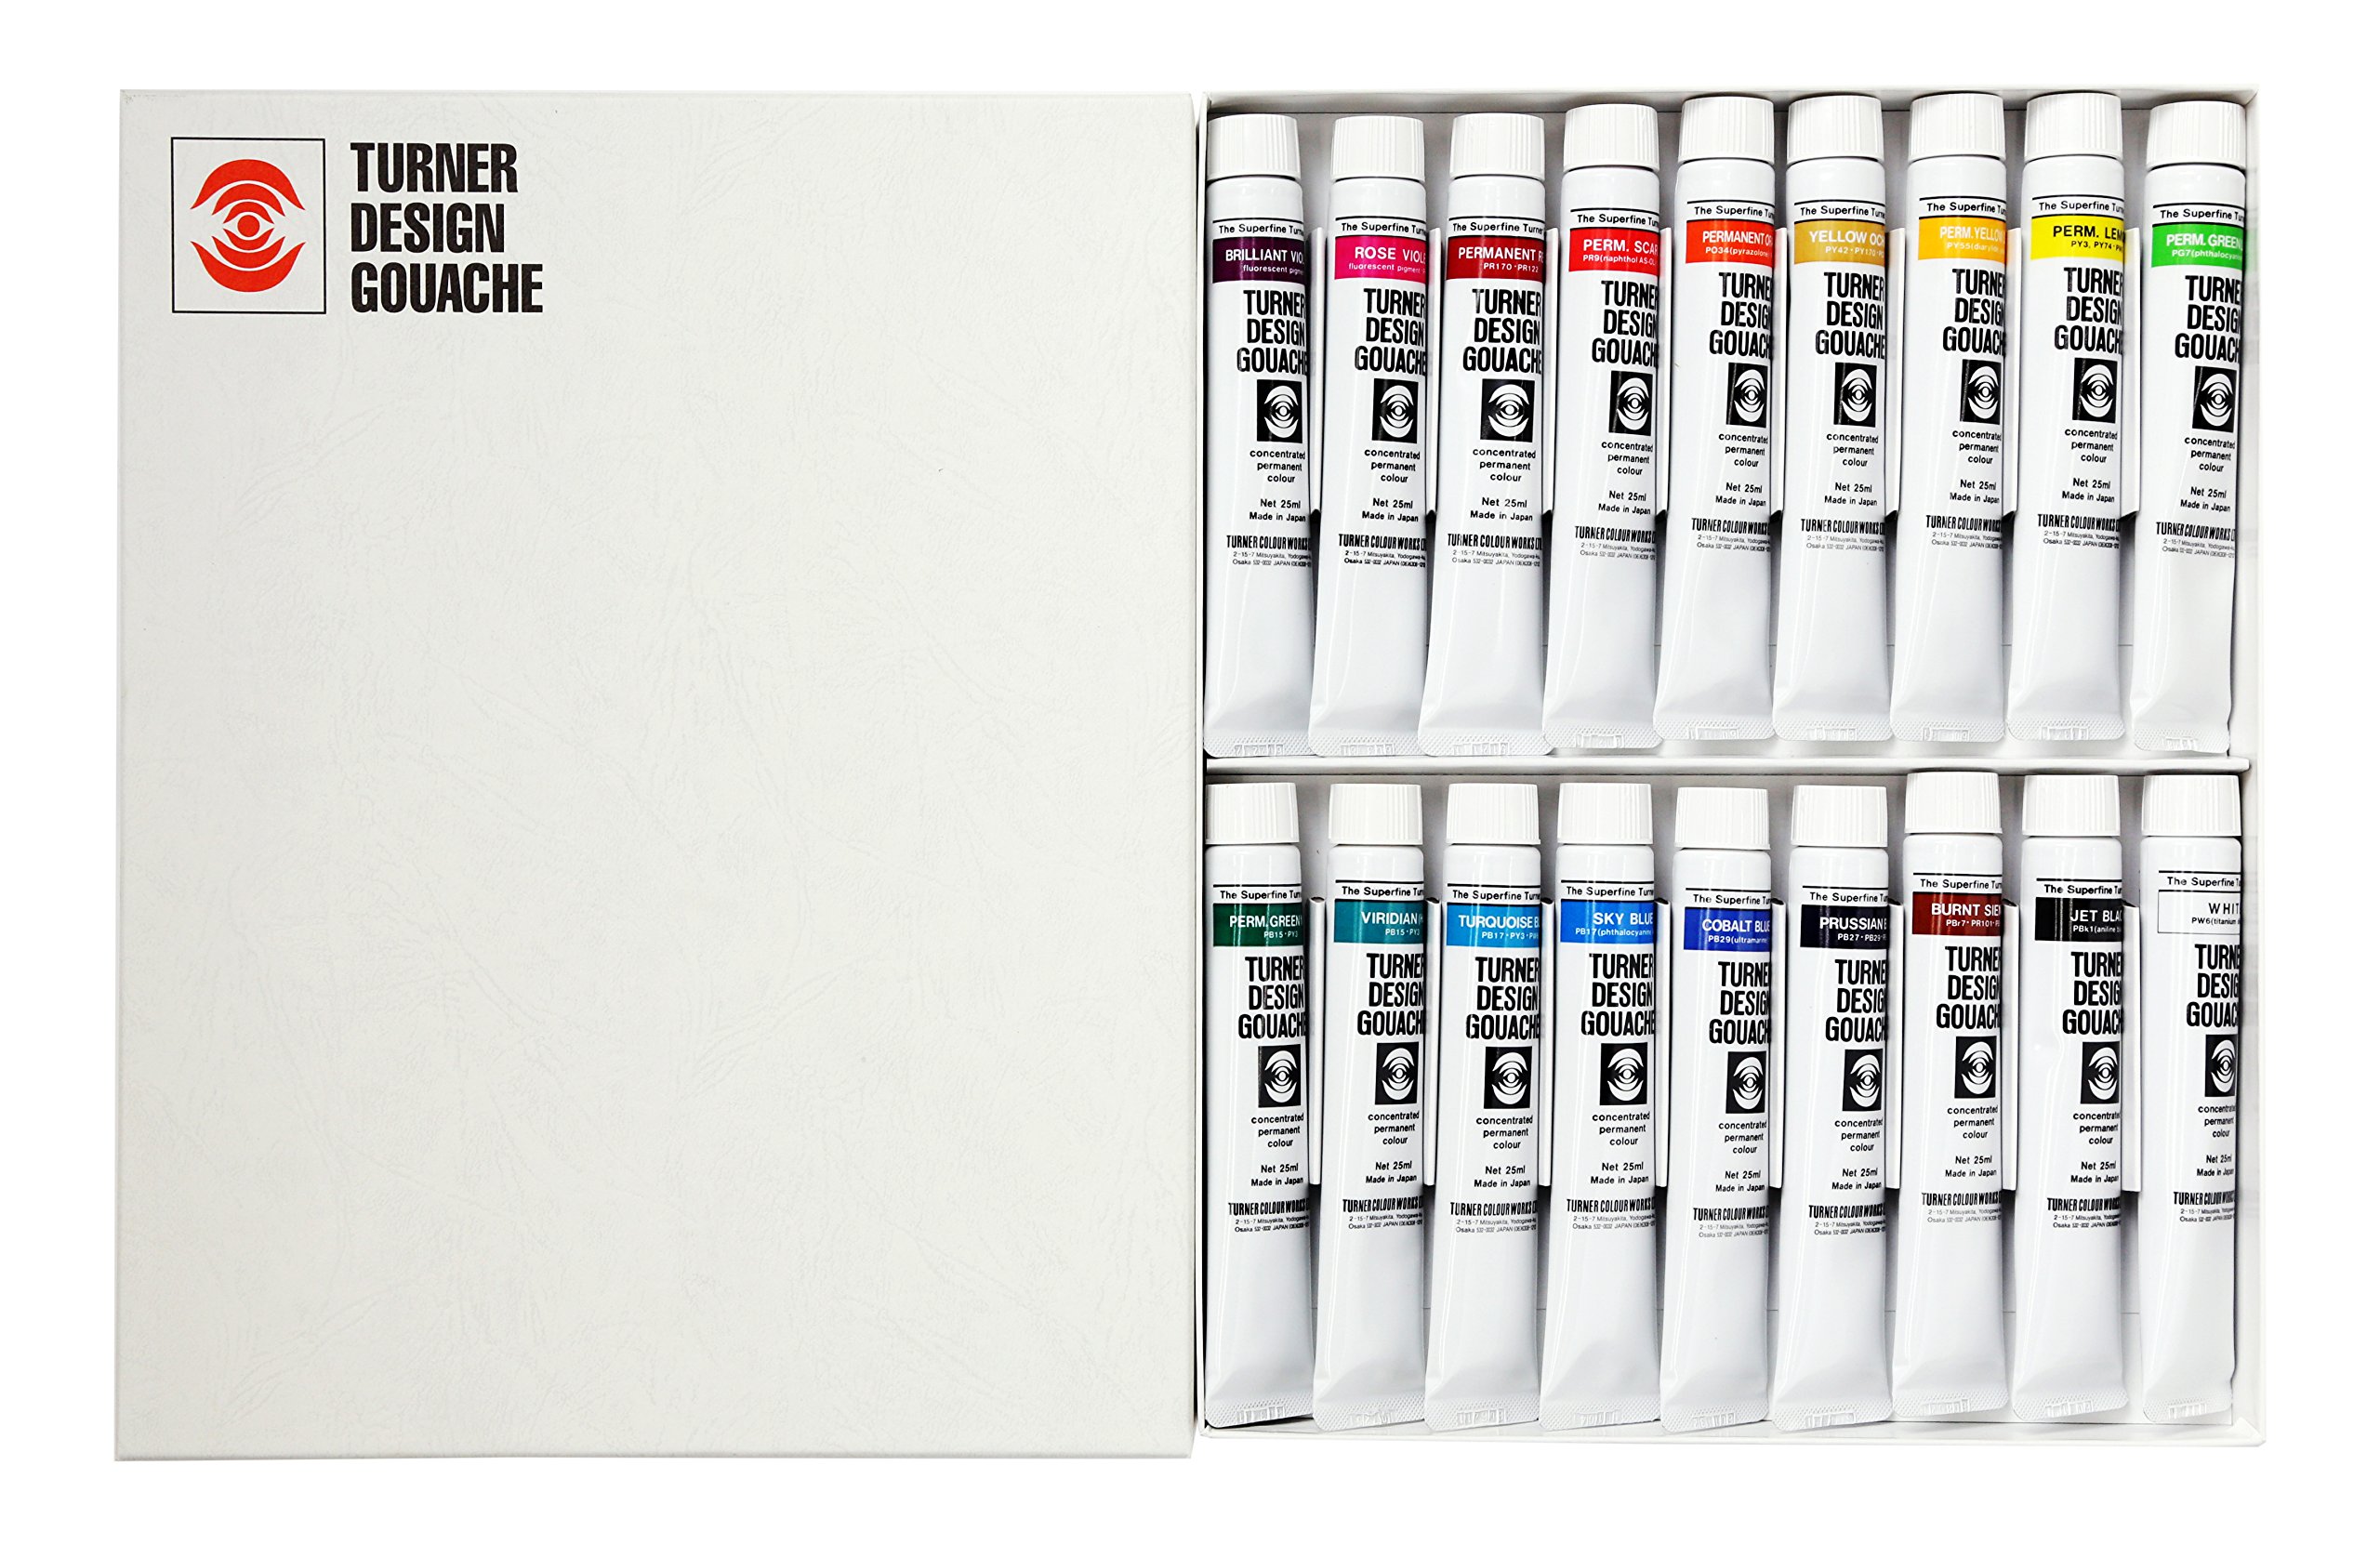 Turner Watercolor Paint Set - Design Gouache Premier Opaque Watercolor Paint - 25 ml Tubes - Set of 18 Assorted Colors